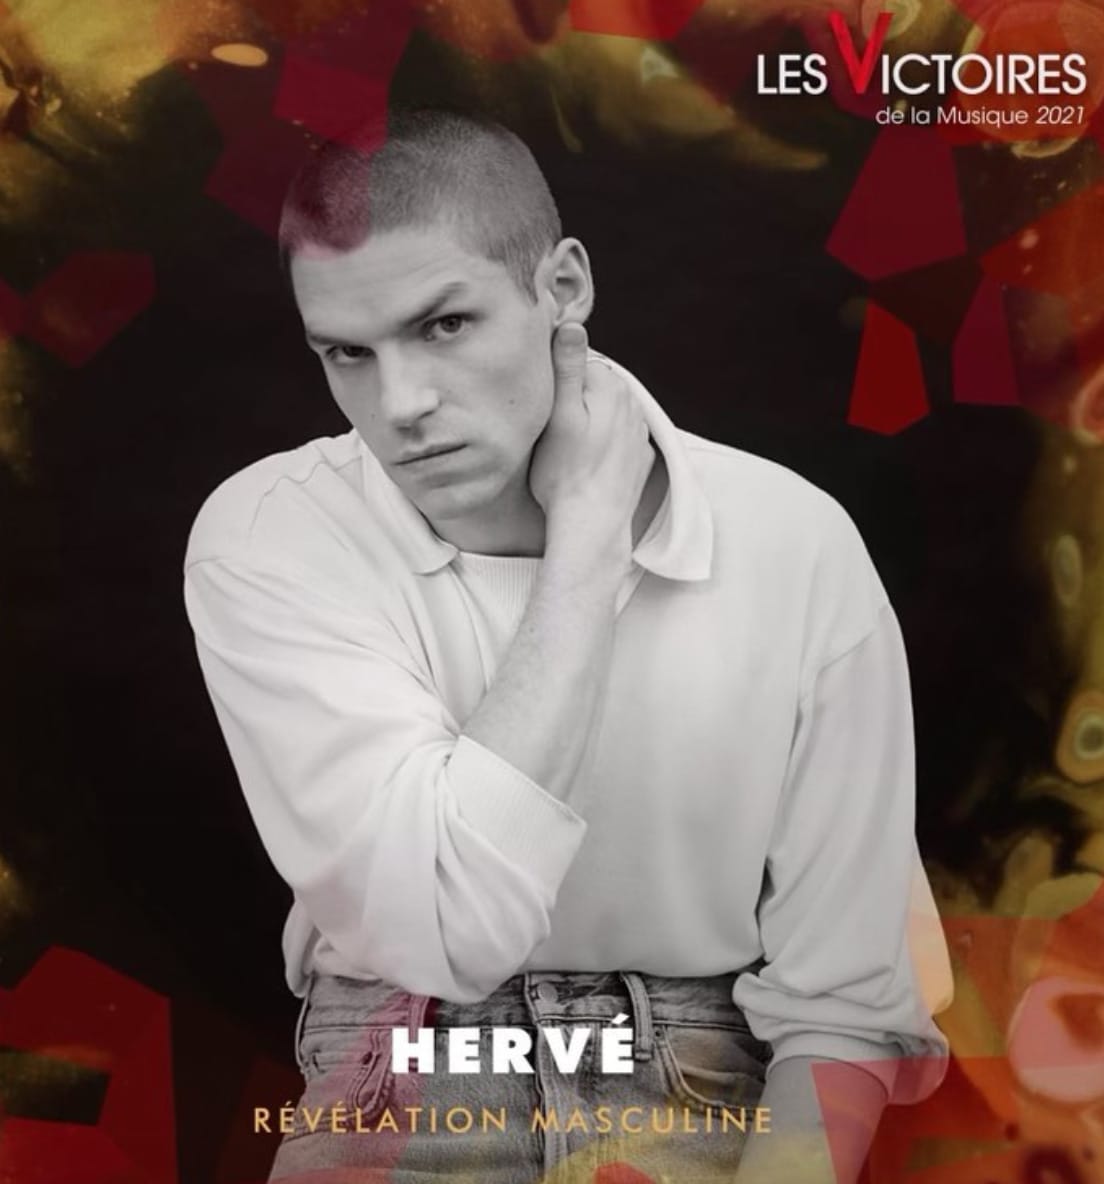 Affiche d'Hervé nommé en tant que Révélation Masculine pour les Victoires de la Musique